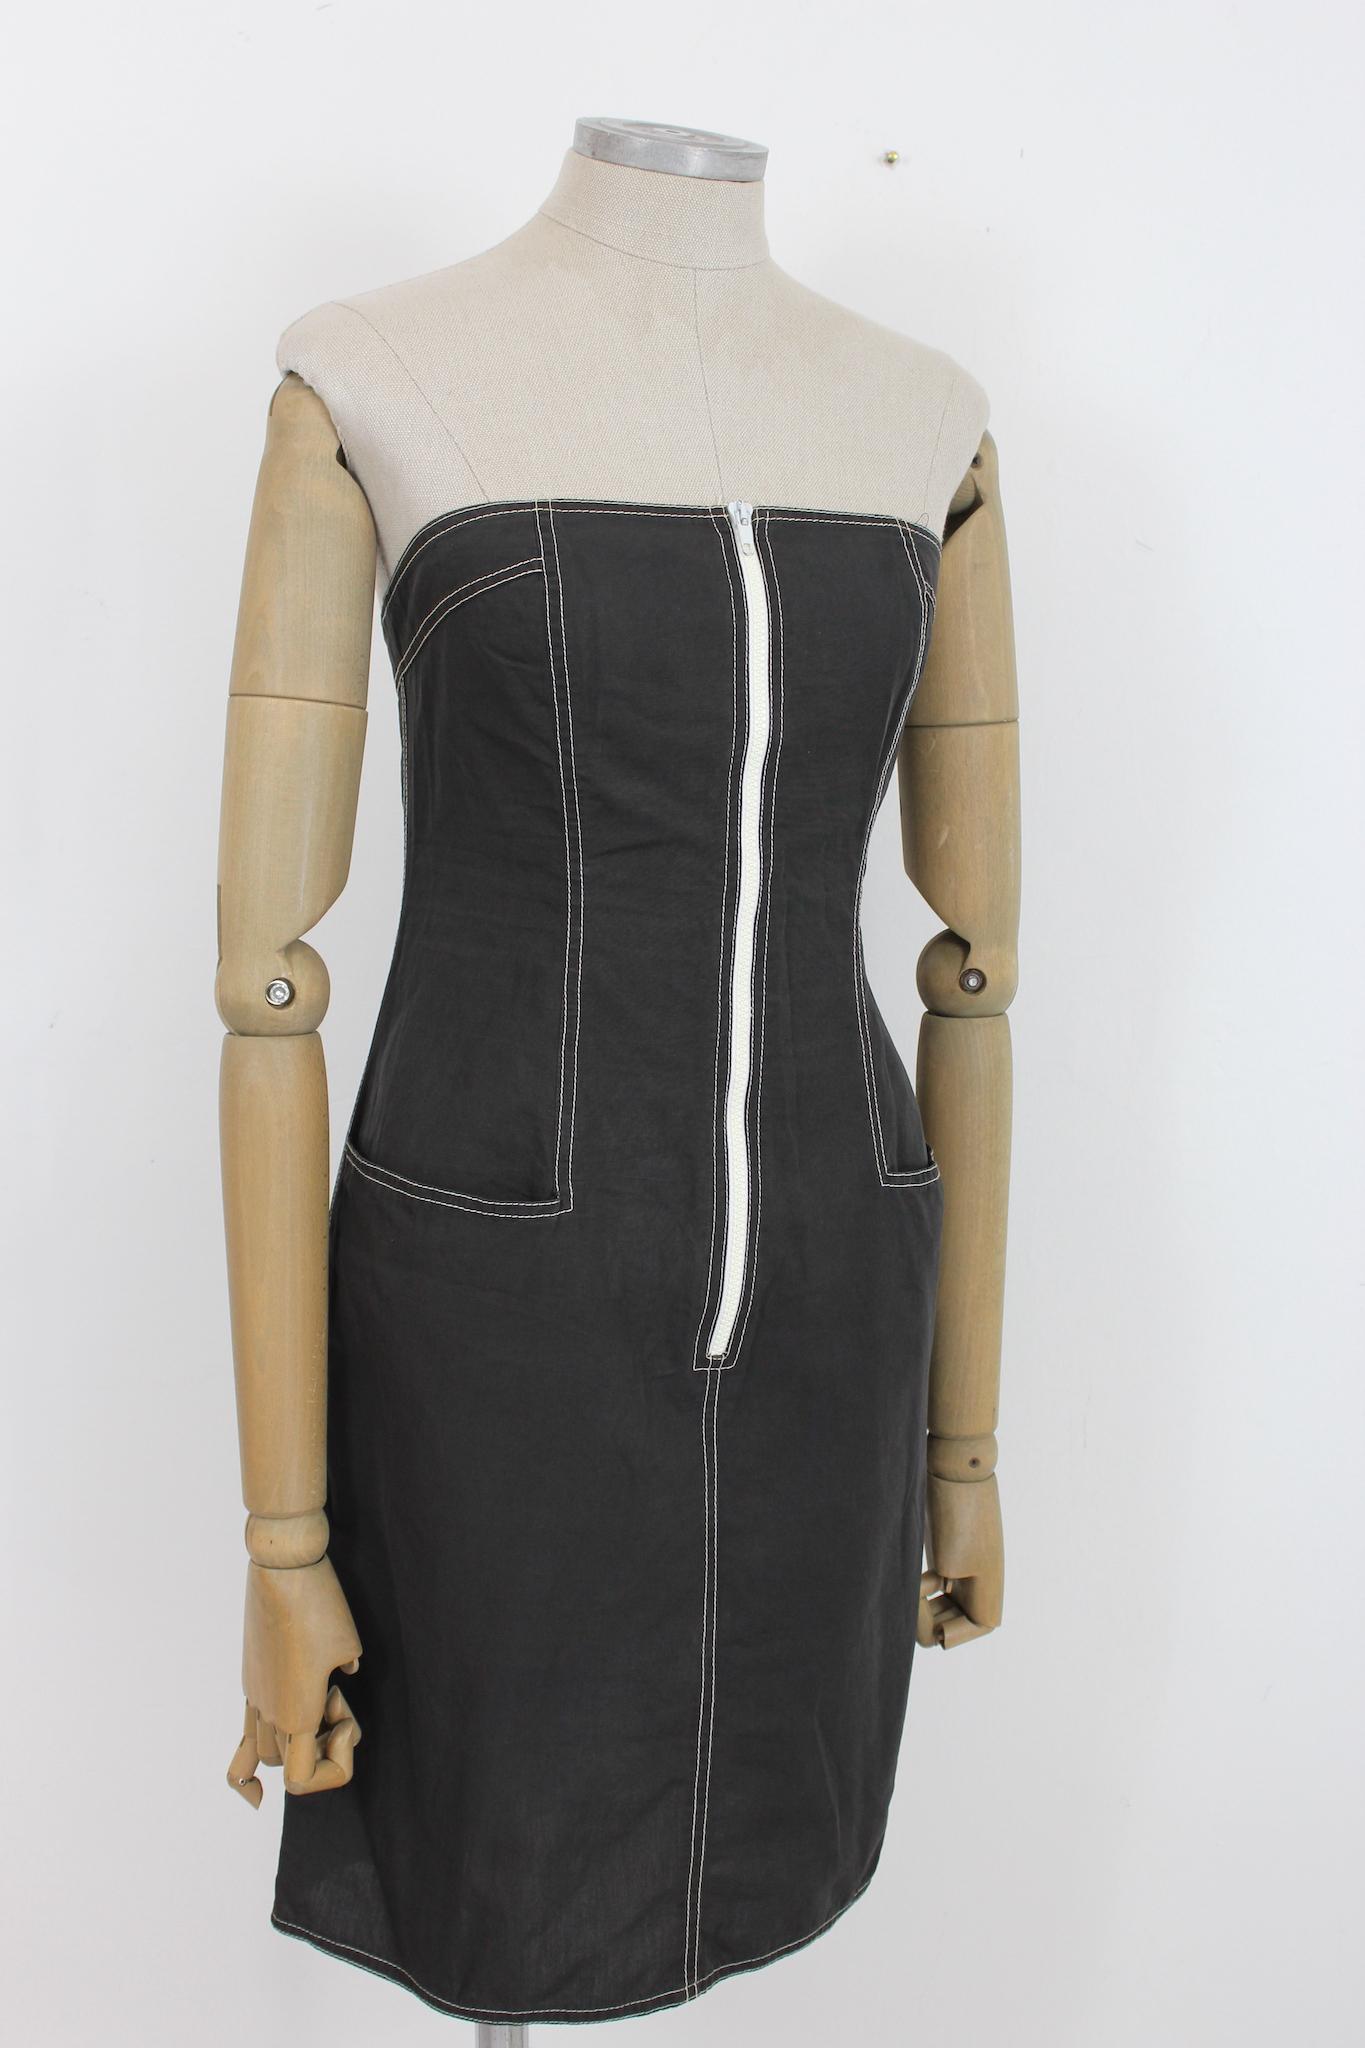 Alberta Ferretti 90er Jahre Vintage Schulterfreies Kleid. Kurzes Kleid mit herzförmigem Ausschnitt, grau mit weißen Nähten. Reißverschluss auf der Brust, auf dem Rücken ein kleiner Gummizug. 100% Baumwollgewebe. Hergestellt in Italien.

Größe: 44 It